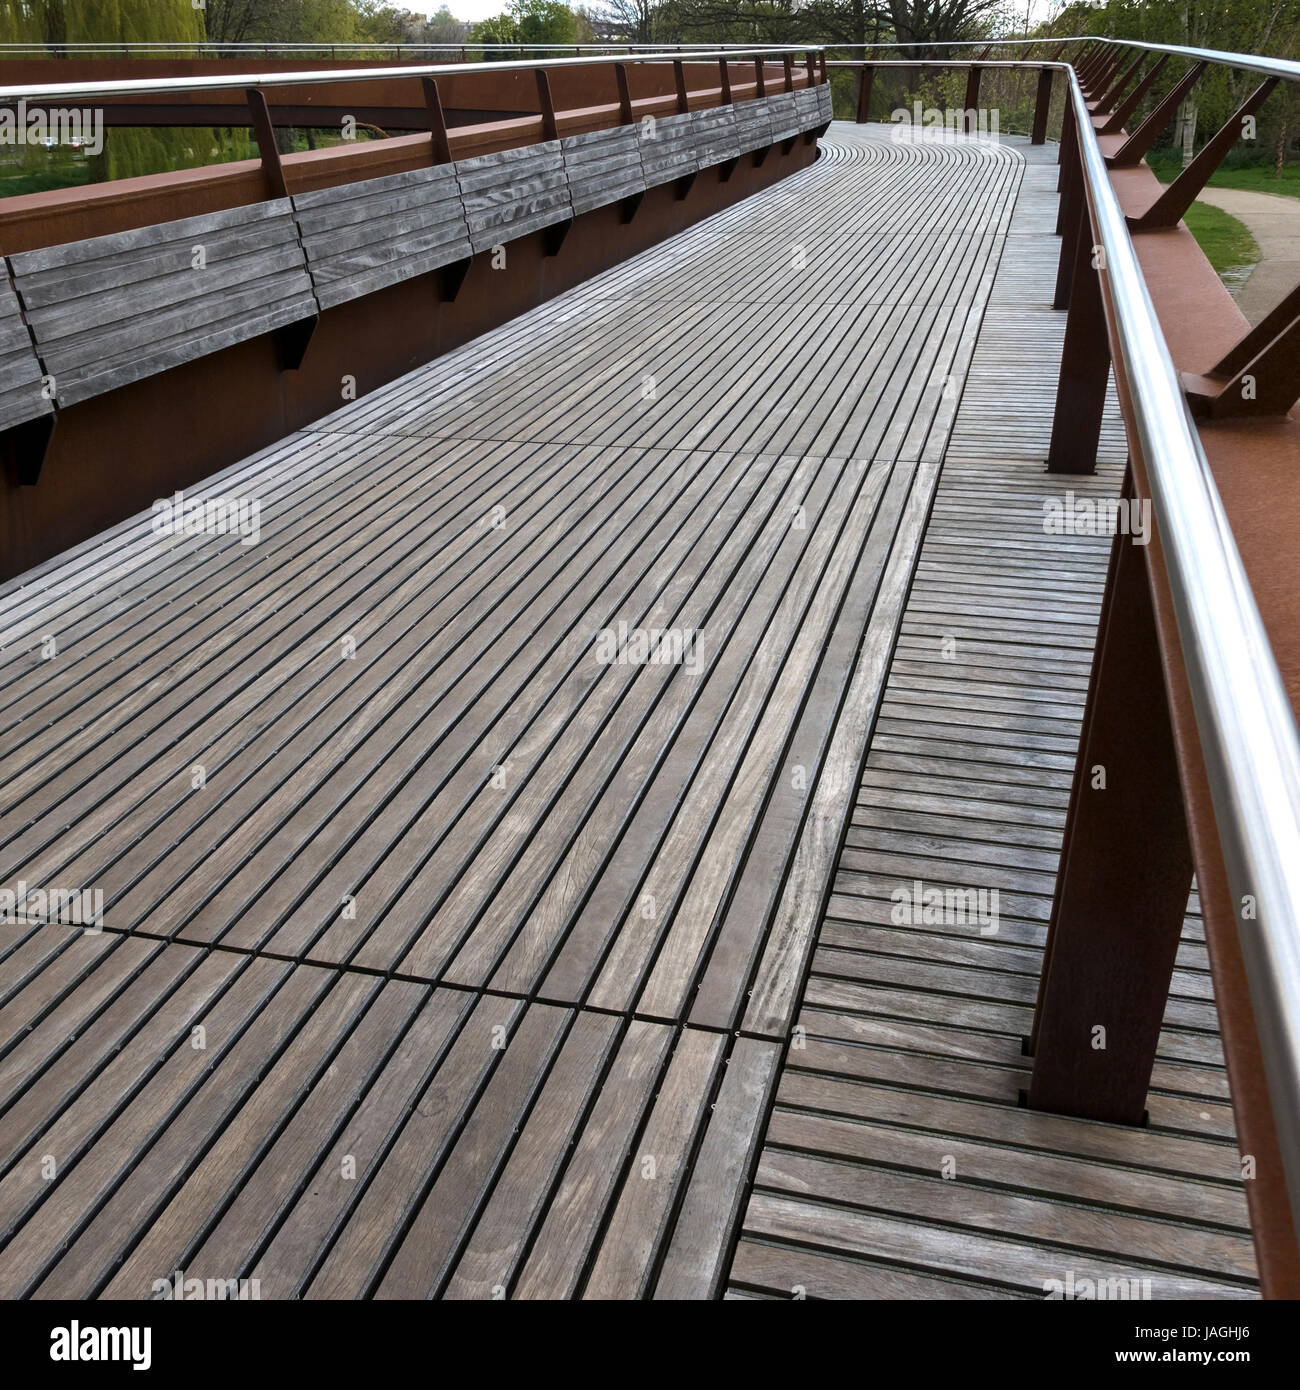 Legname decking boardwalk del ponte Jarrold, Norwich, Regno Unito Foto Stock